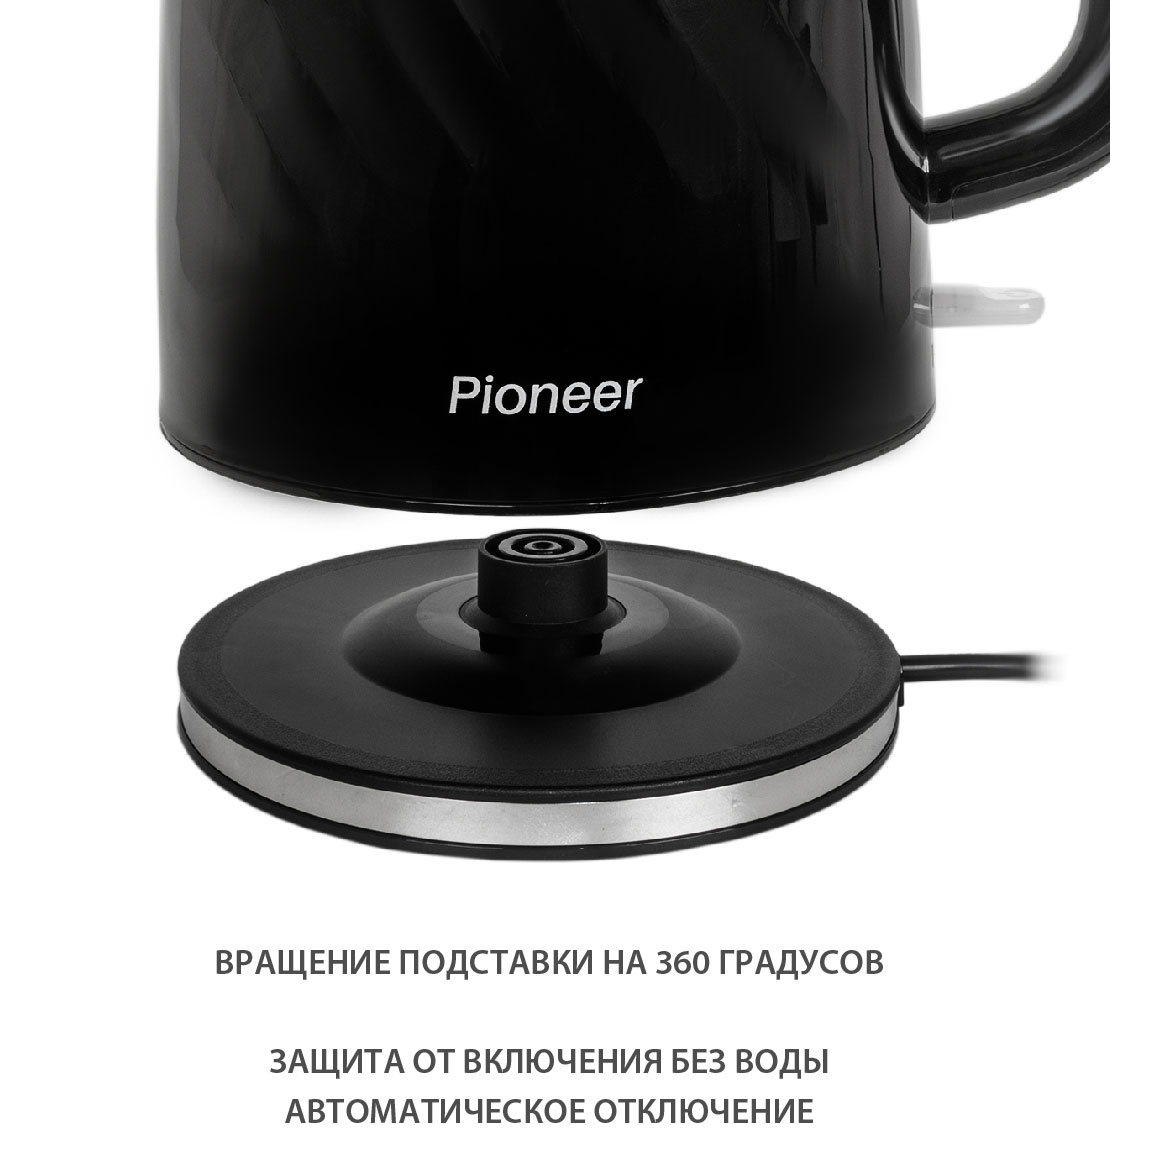 Чайник Pioneer KE220P